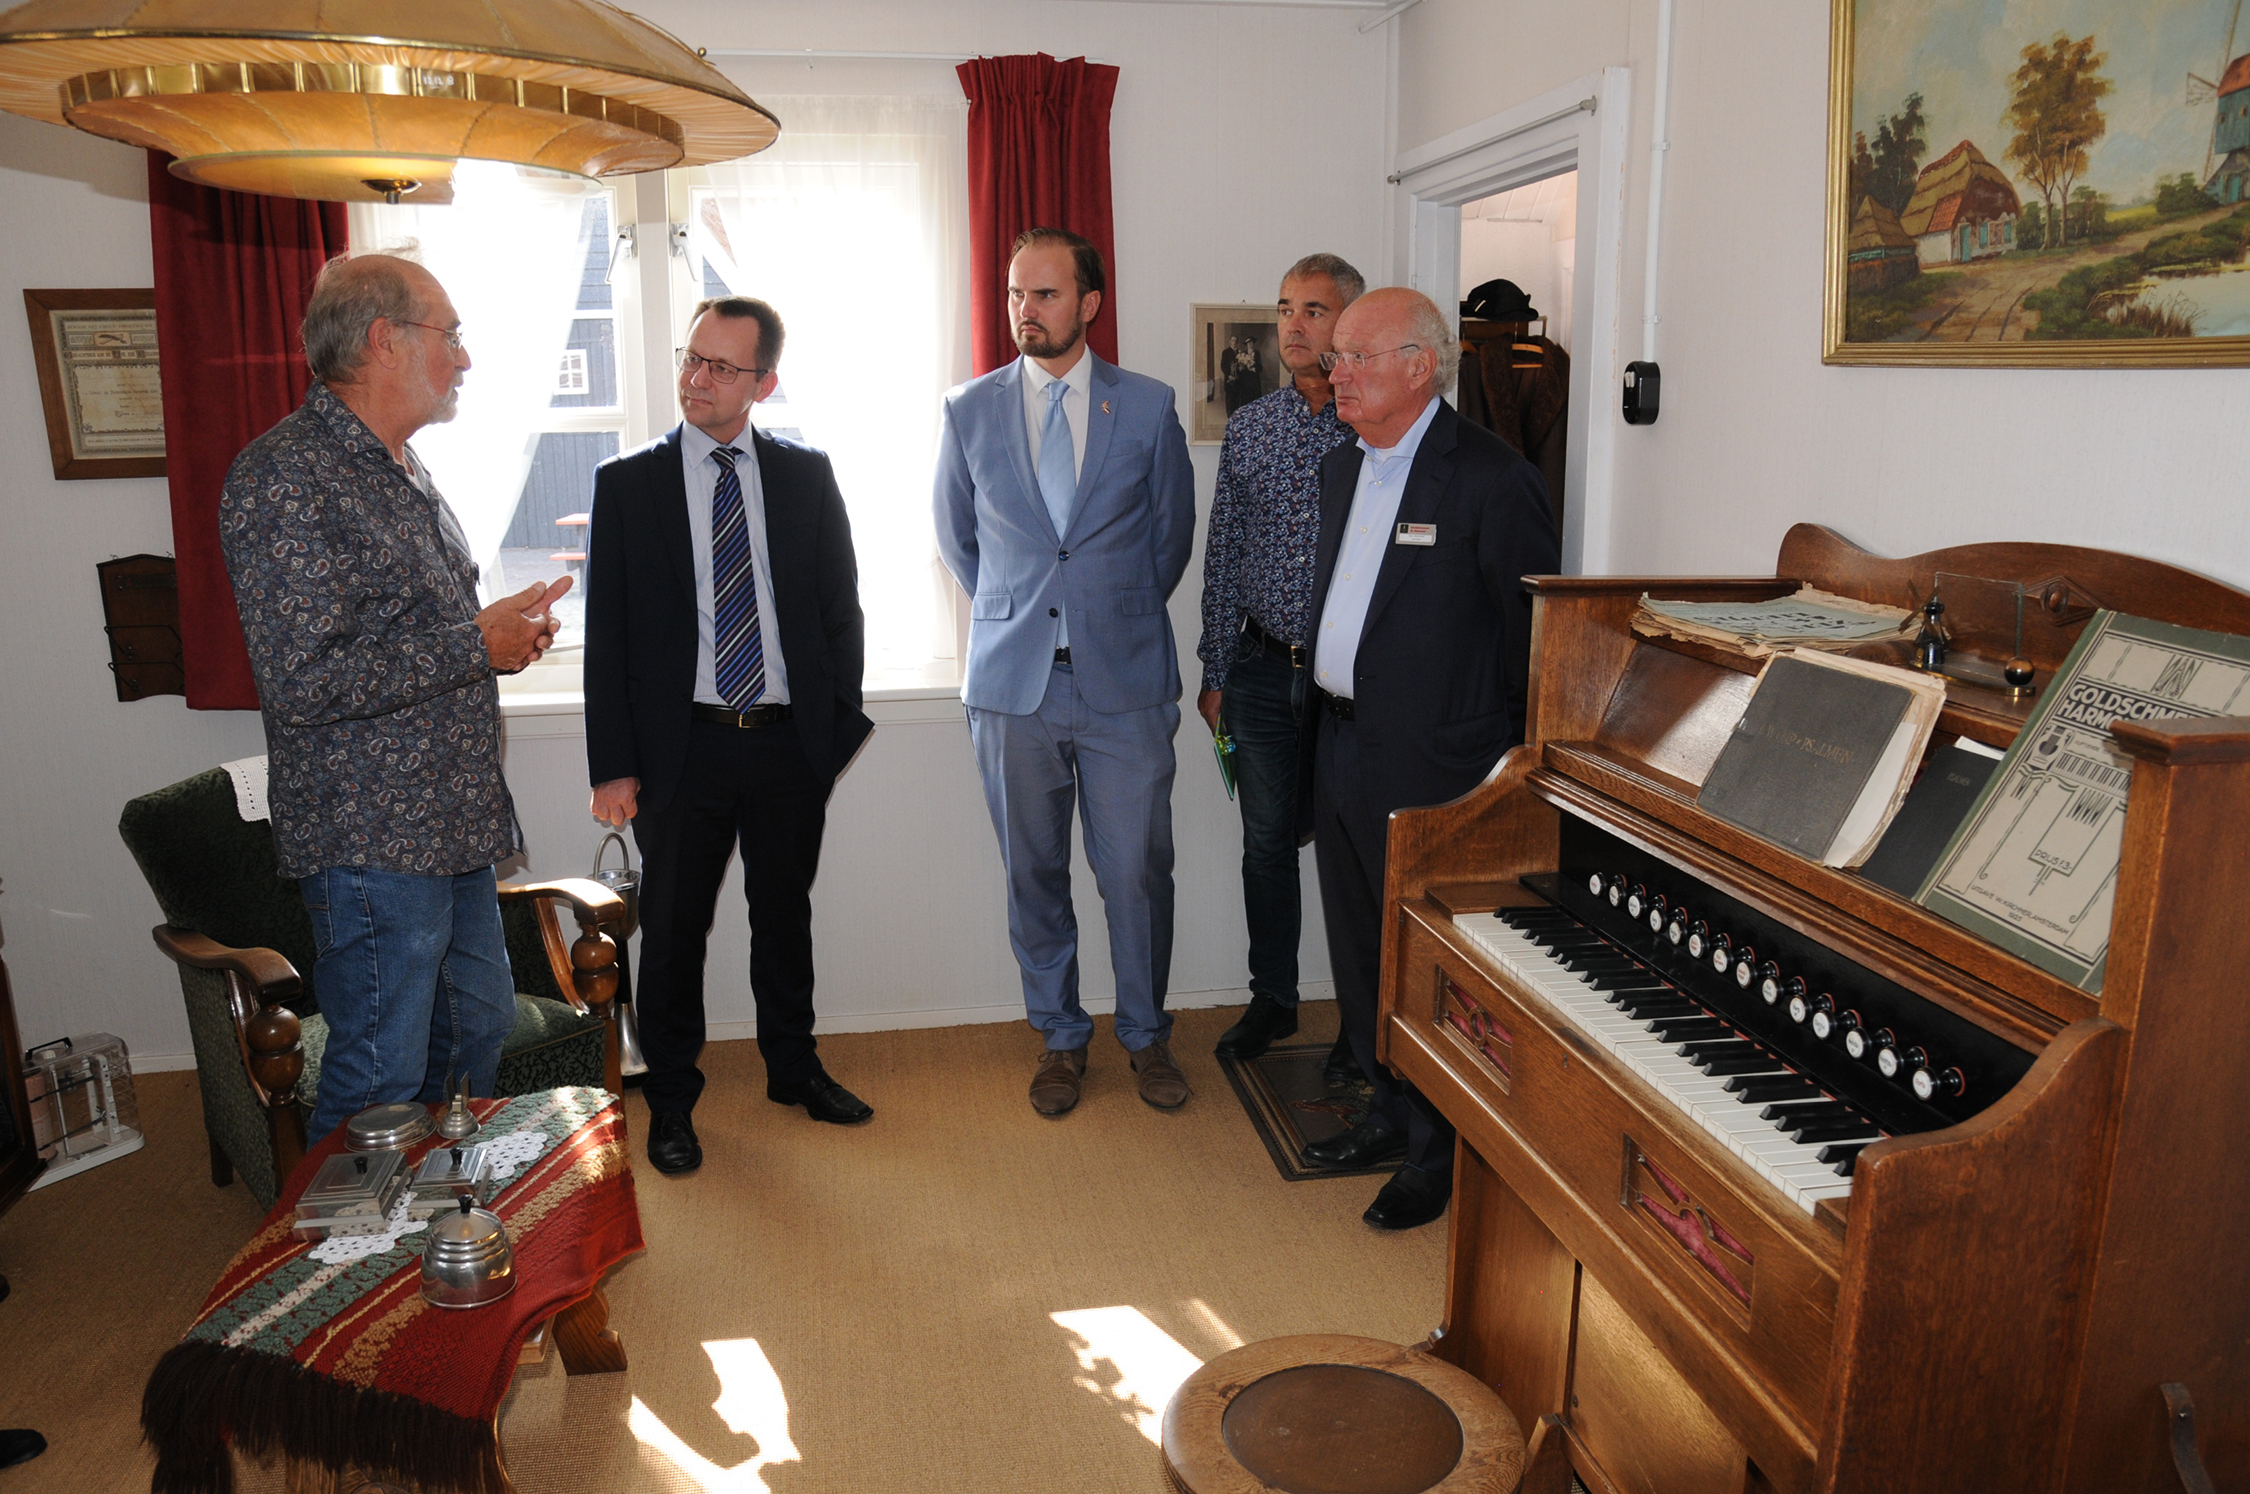 Noorse ambassadeur bezoekt Streekmuseum De Meestoof